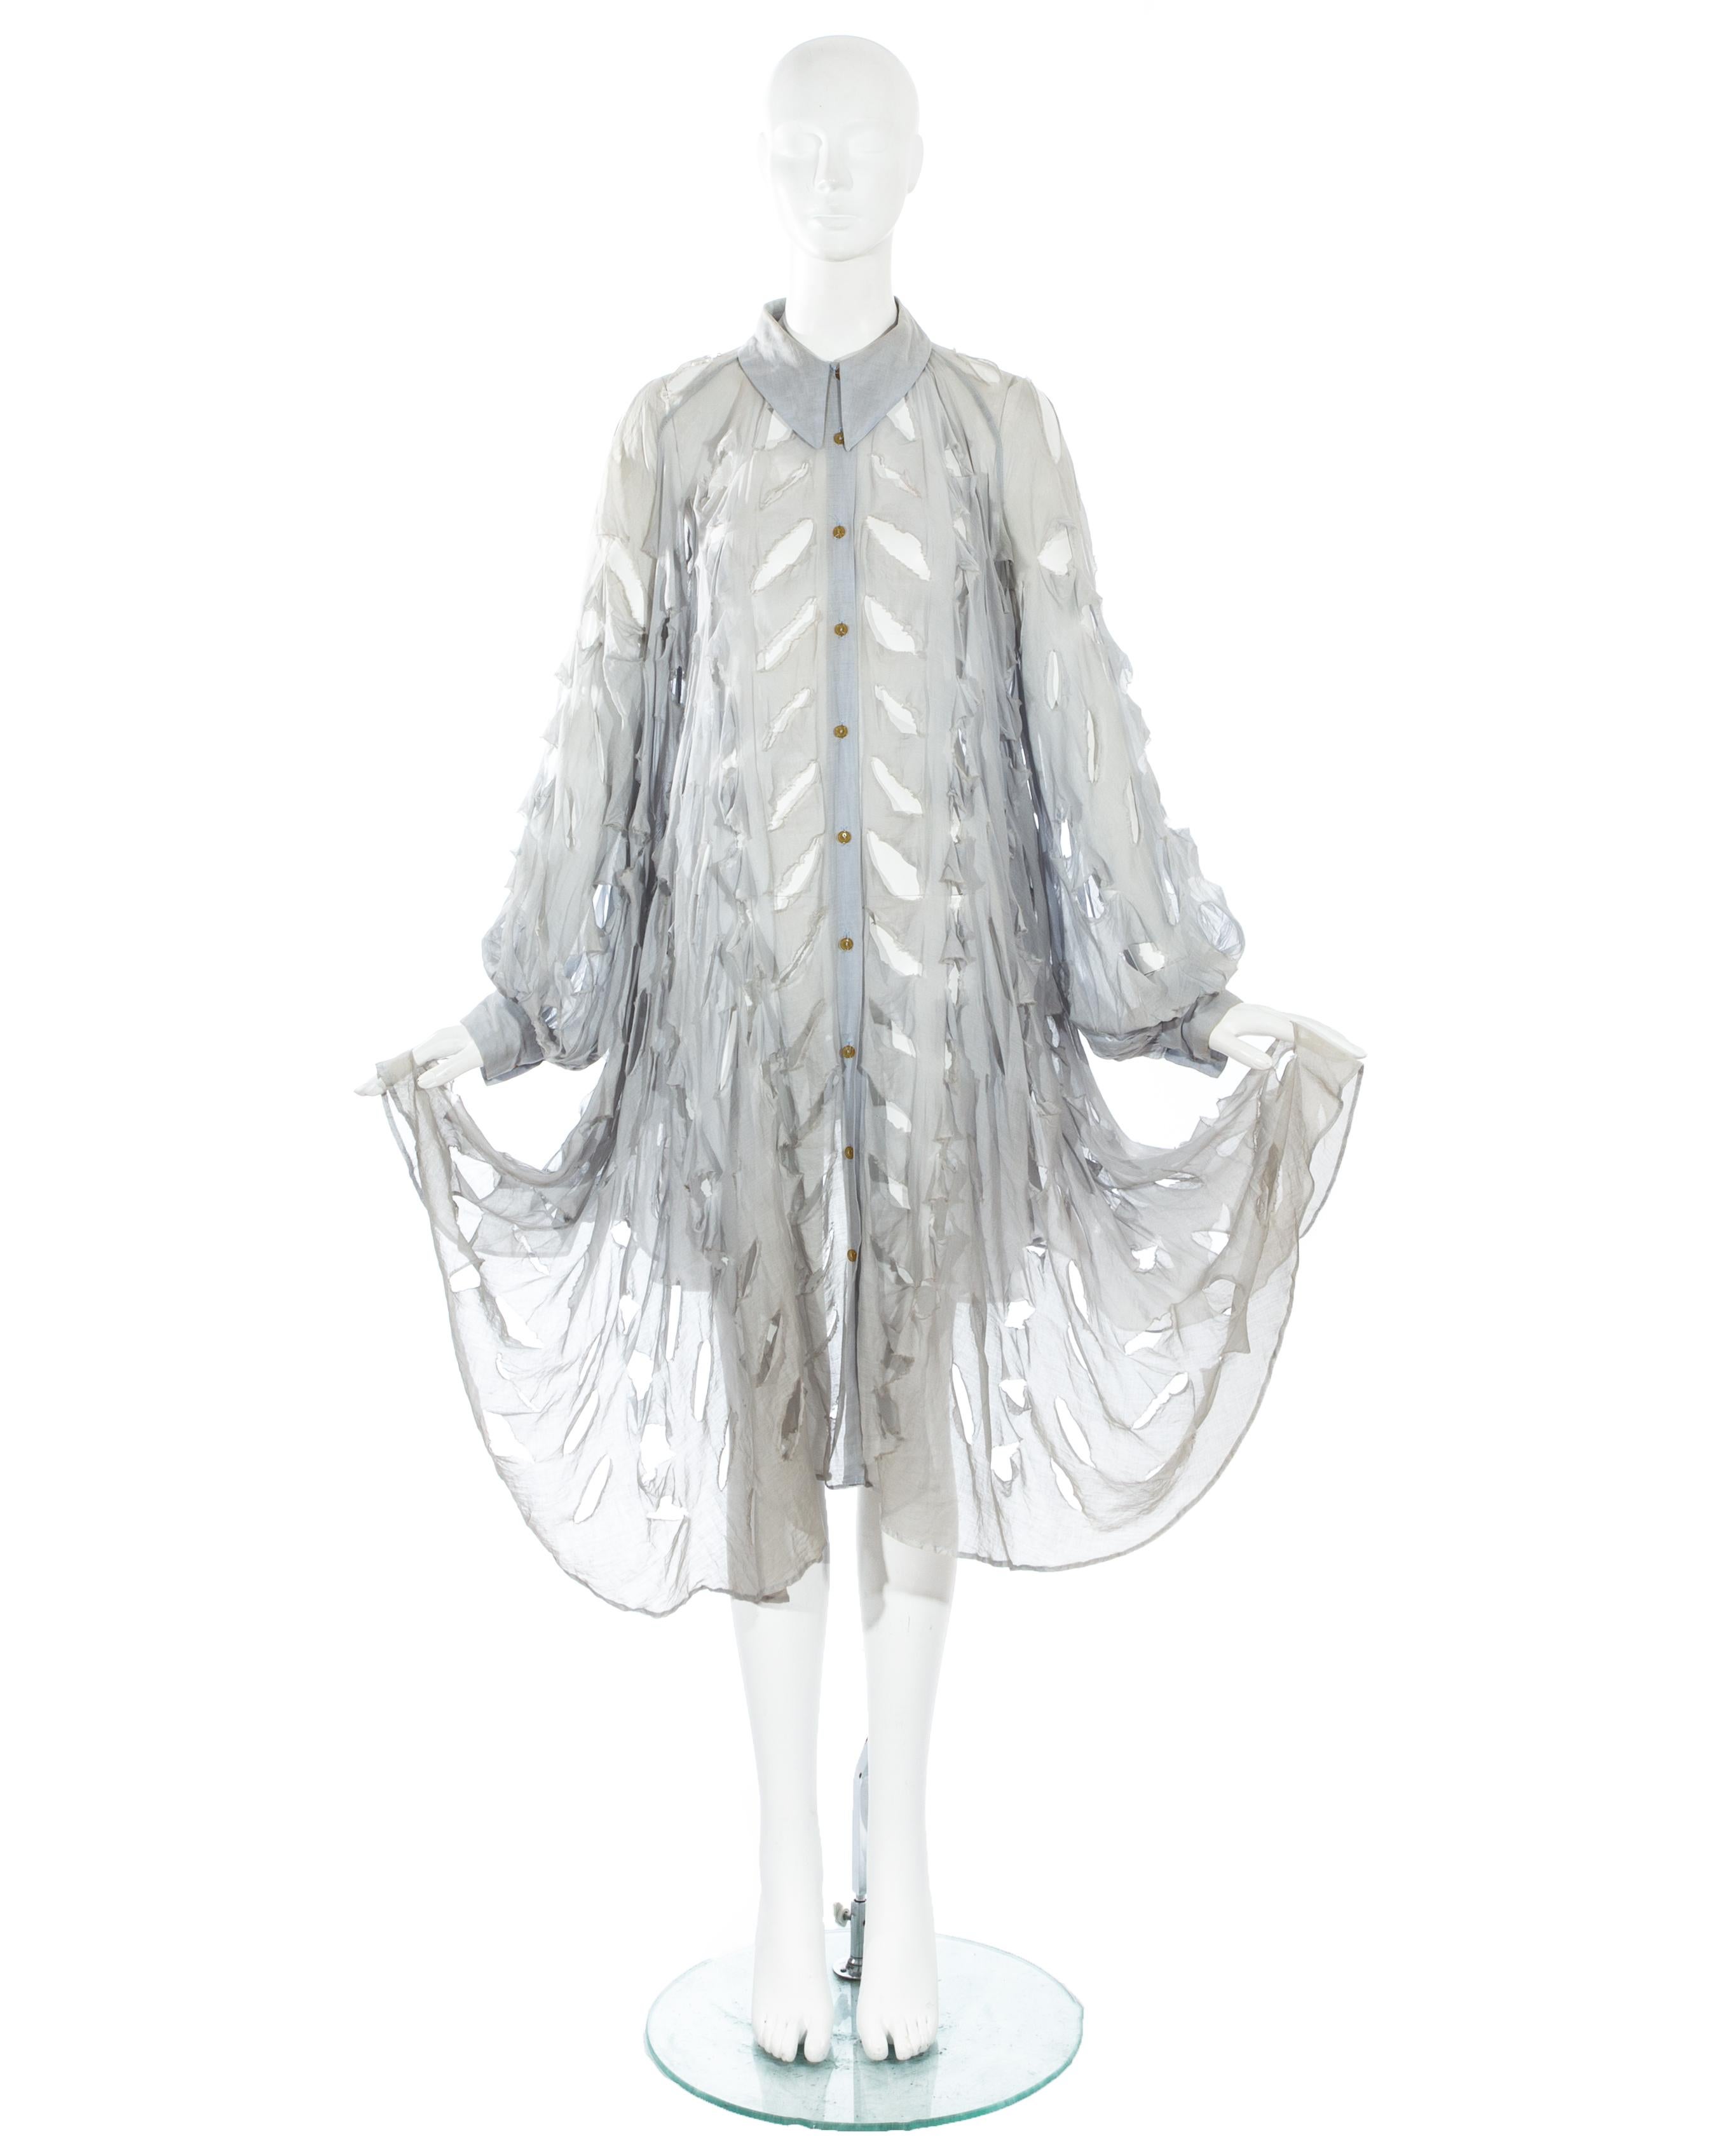 Vivienne Westwood ; blouse surdimensionnée en voile de coton bleu poussiéreux avec larges manches épiscopales, col pointu et ourlet ascendant sur le devant. Le chemisier est orné de fentes caractéristiques sur l'ensemble du corps.

'Cut, Slash &